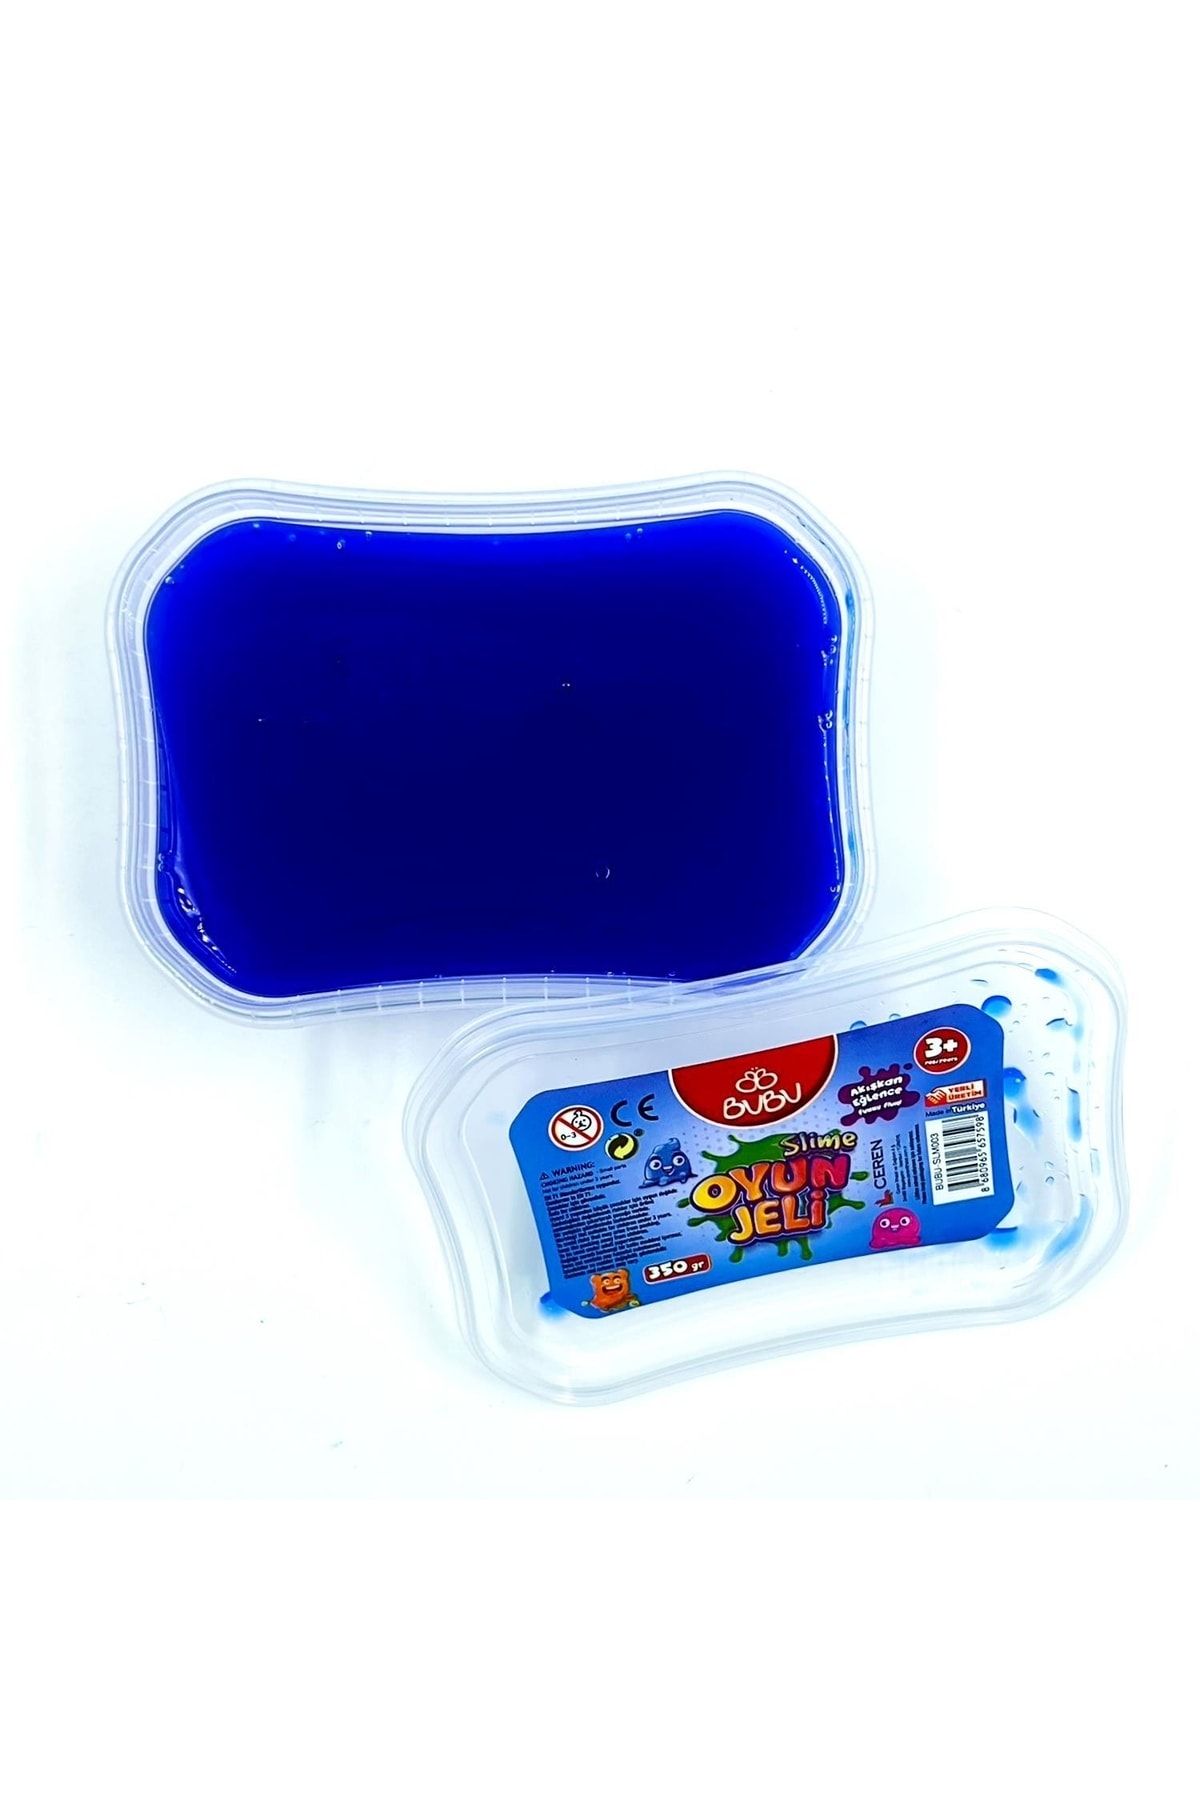 Bubu Metalik Oyun Jeli Slime 350 Gram Neon Mavi